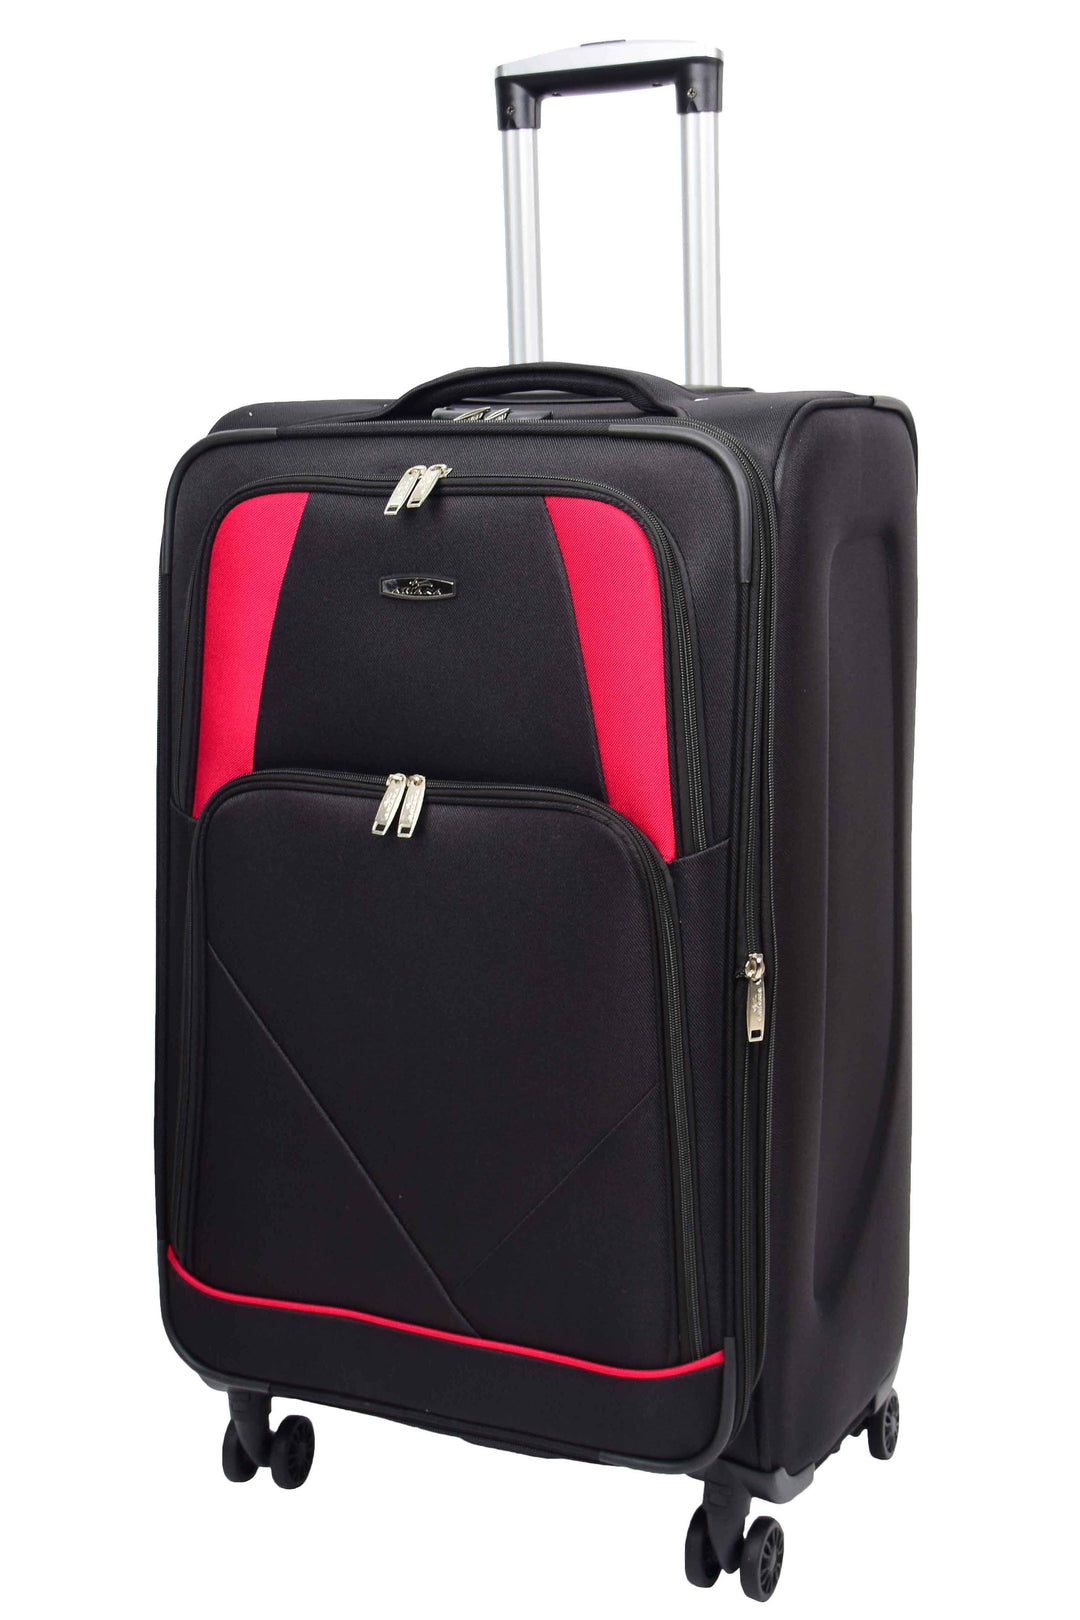 Guardian Lightweight Suitcase 11